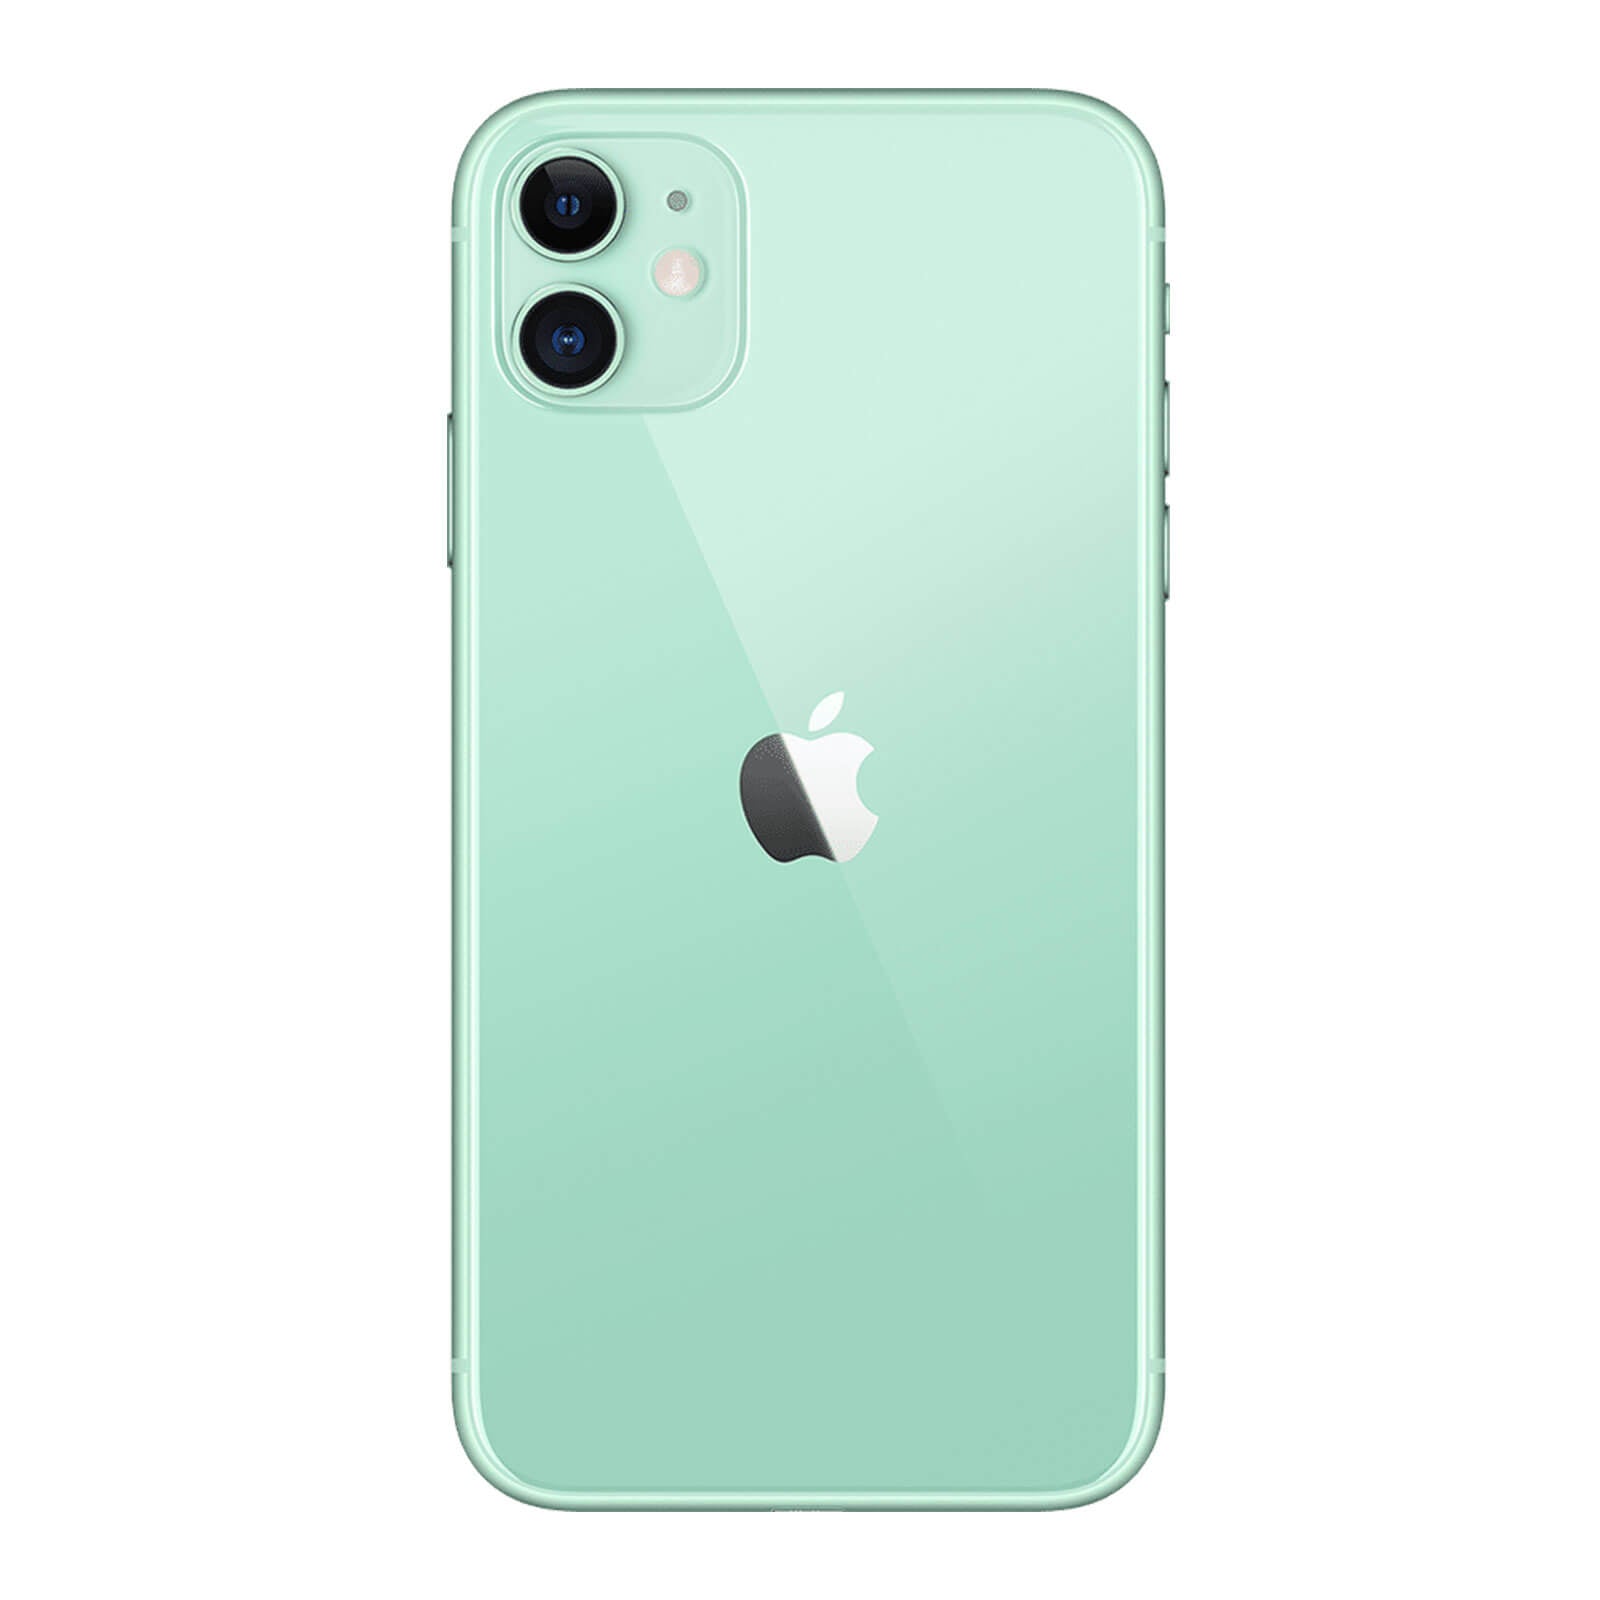 iPhone 11 256 Go - Vert - Débloqué - Comme Neuf